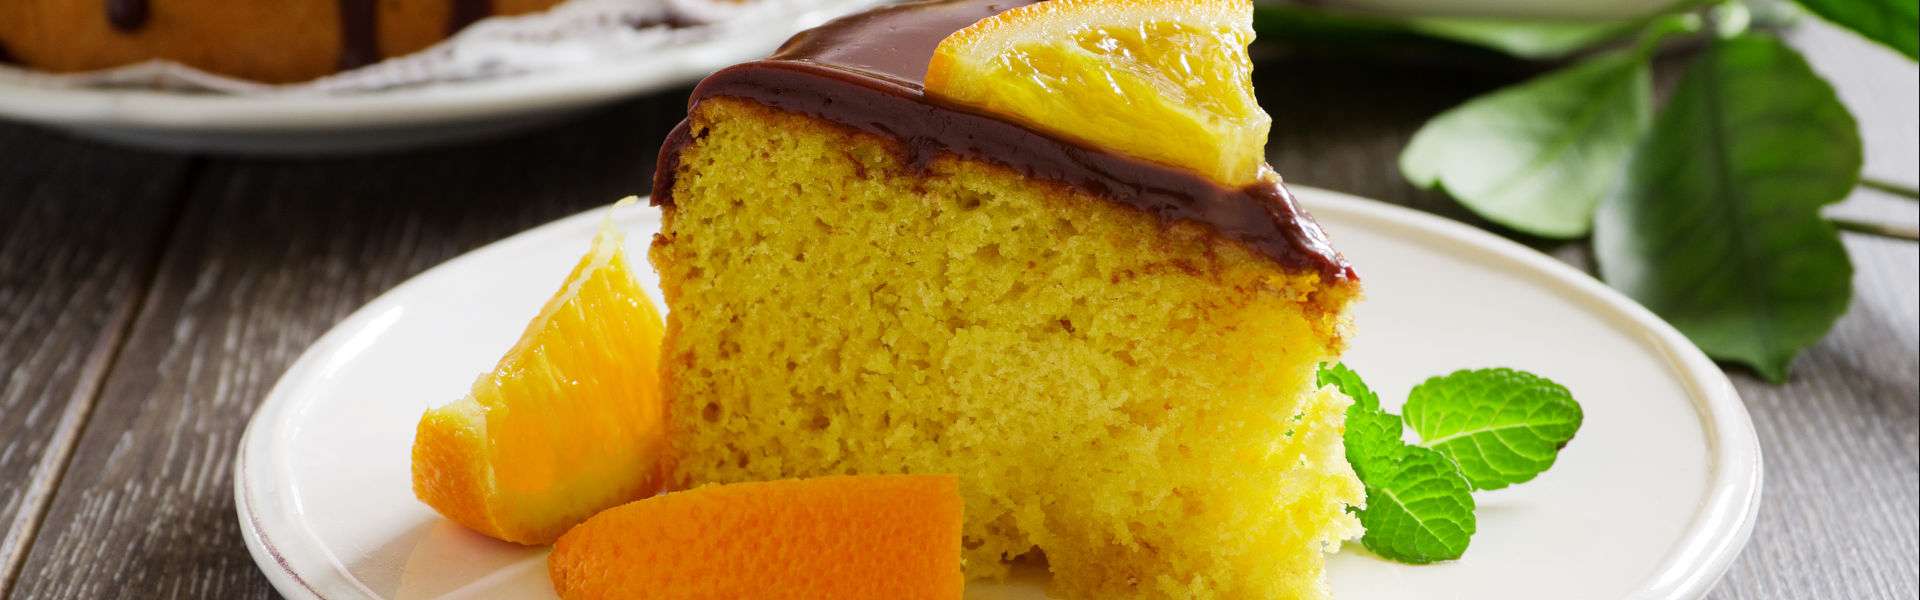 Jus d'orange et gâteau à la crème: très doux et riche en vitamine C